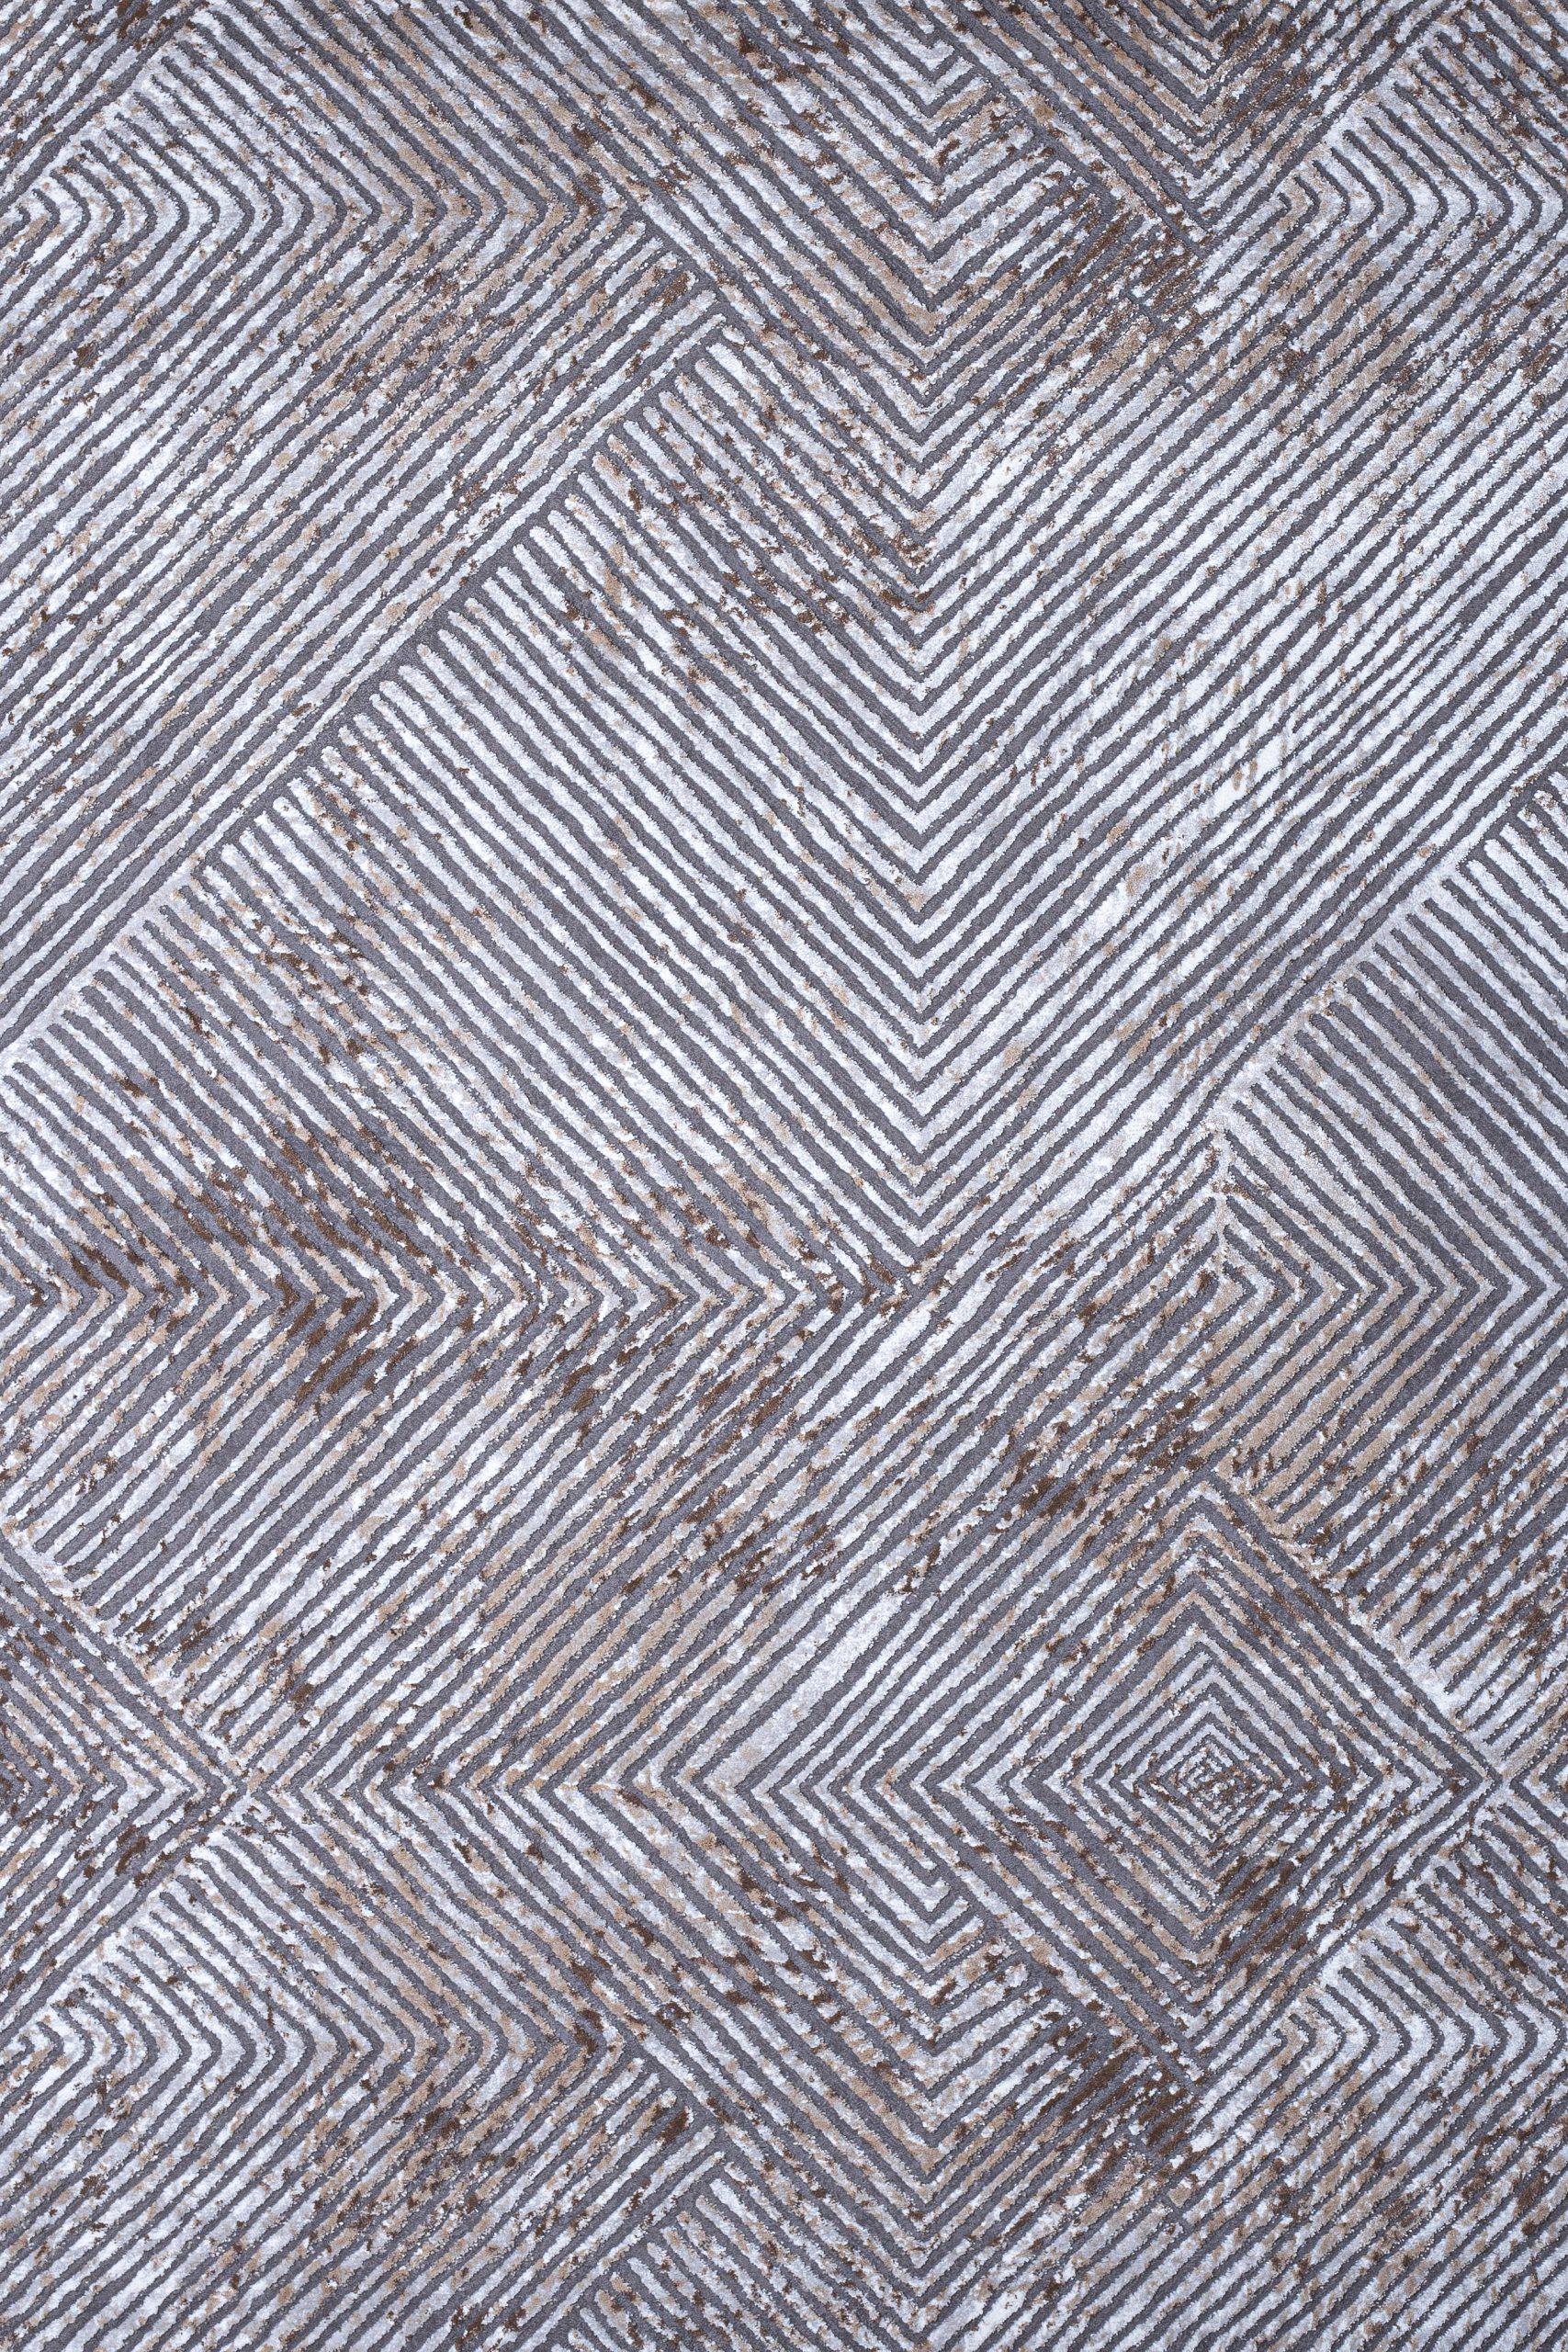 Γραμμικό χαλί γκρι μπεζ Ostia 7100/976 με το μέτρο - Colore Colori